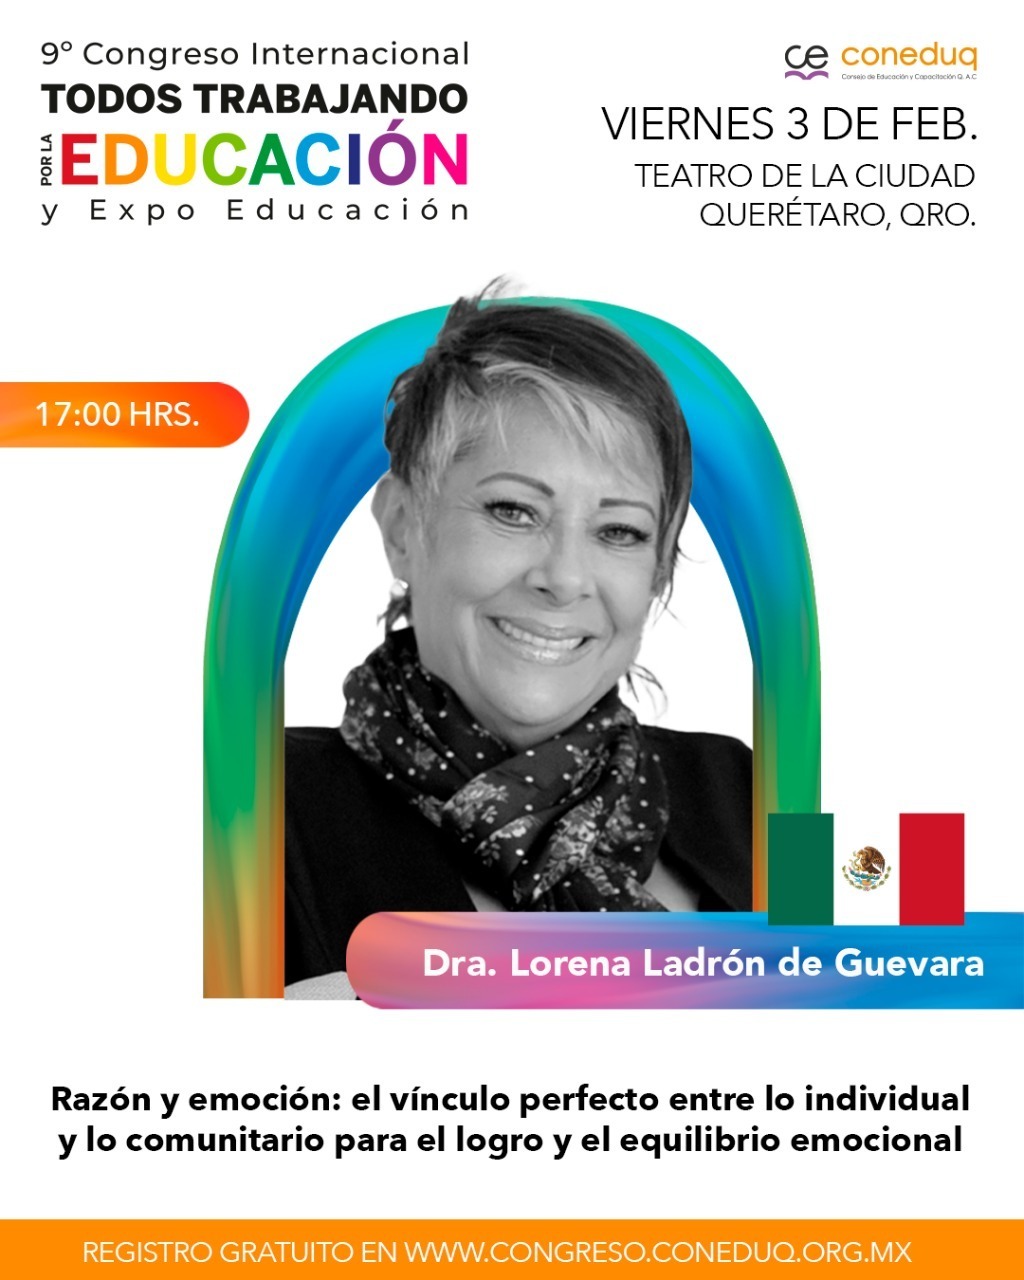 Dra. Lorena Ladrón de Guevara